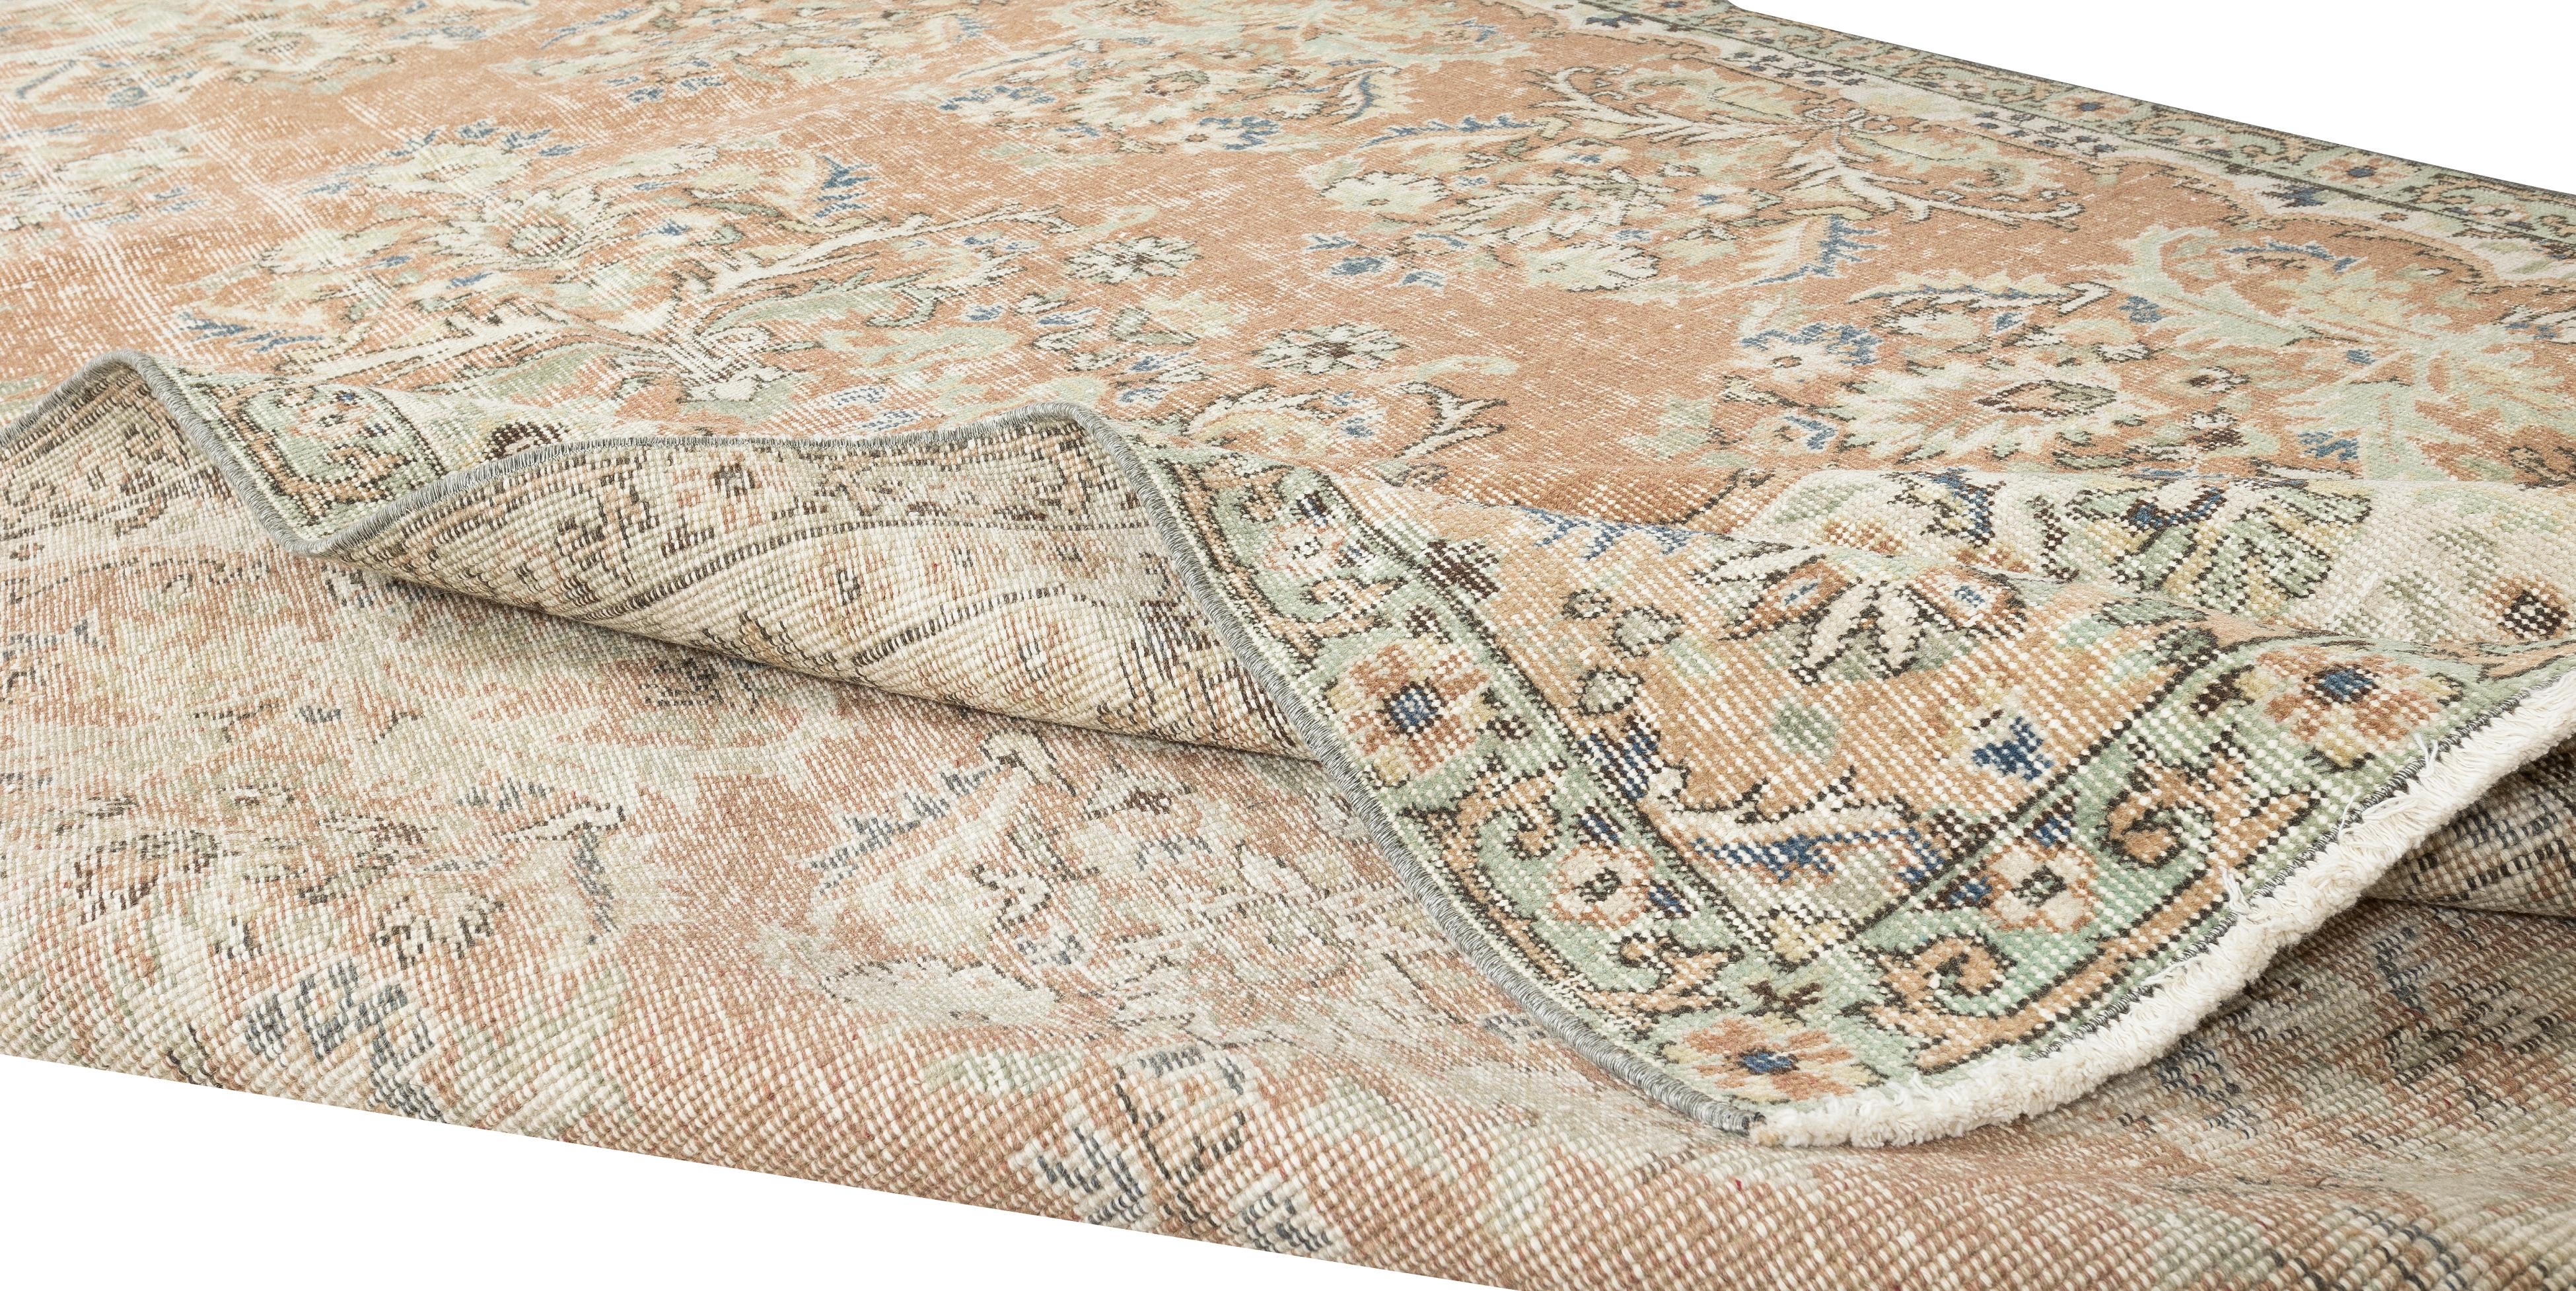 Unsere sonnenverblassten Teppiche sind allesamt einzigartige, handgeknüpfte, 50-70 Jahre alte Vintage-Stücke. Jeder von ihnen zeichnet sich durch eine einzigartige, handgefertigte Ästhetik aus, die aus der jahrhundertealten türkischen Teppichweberei